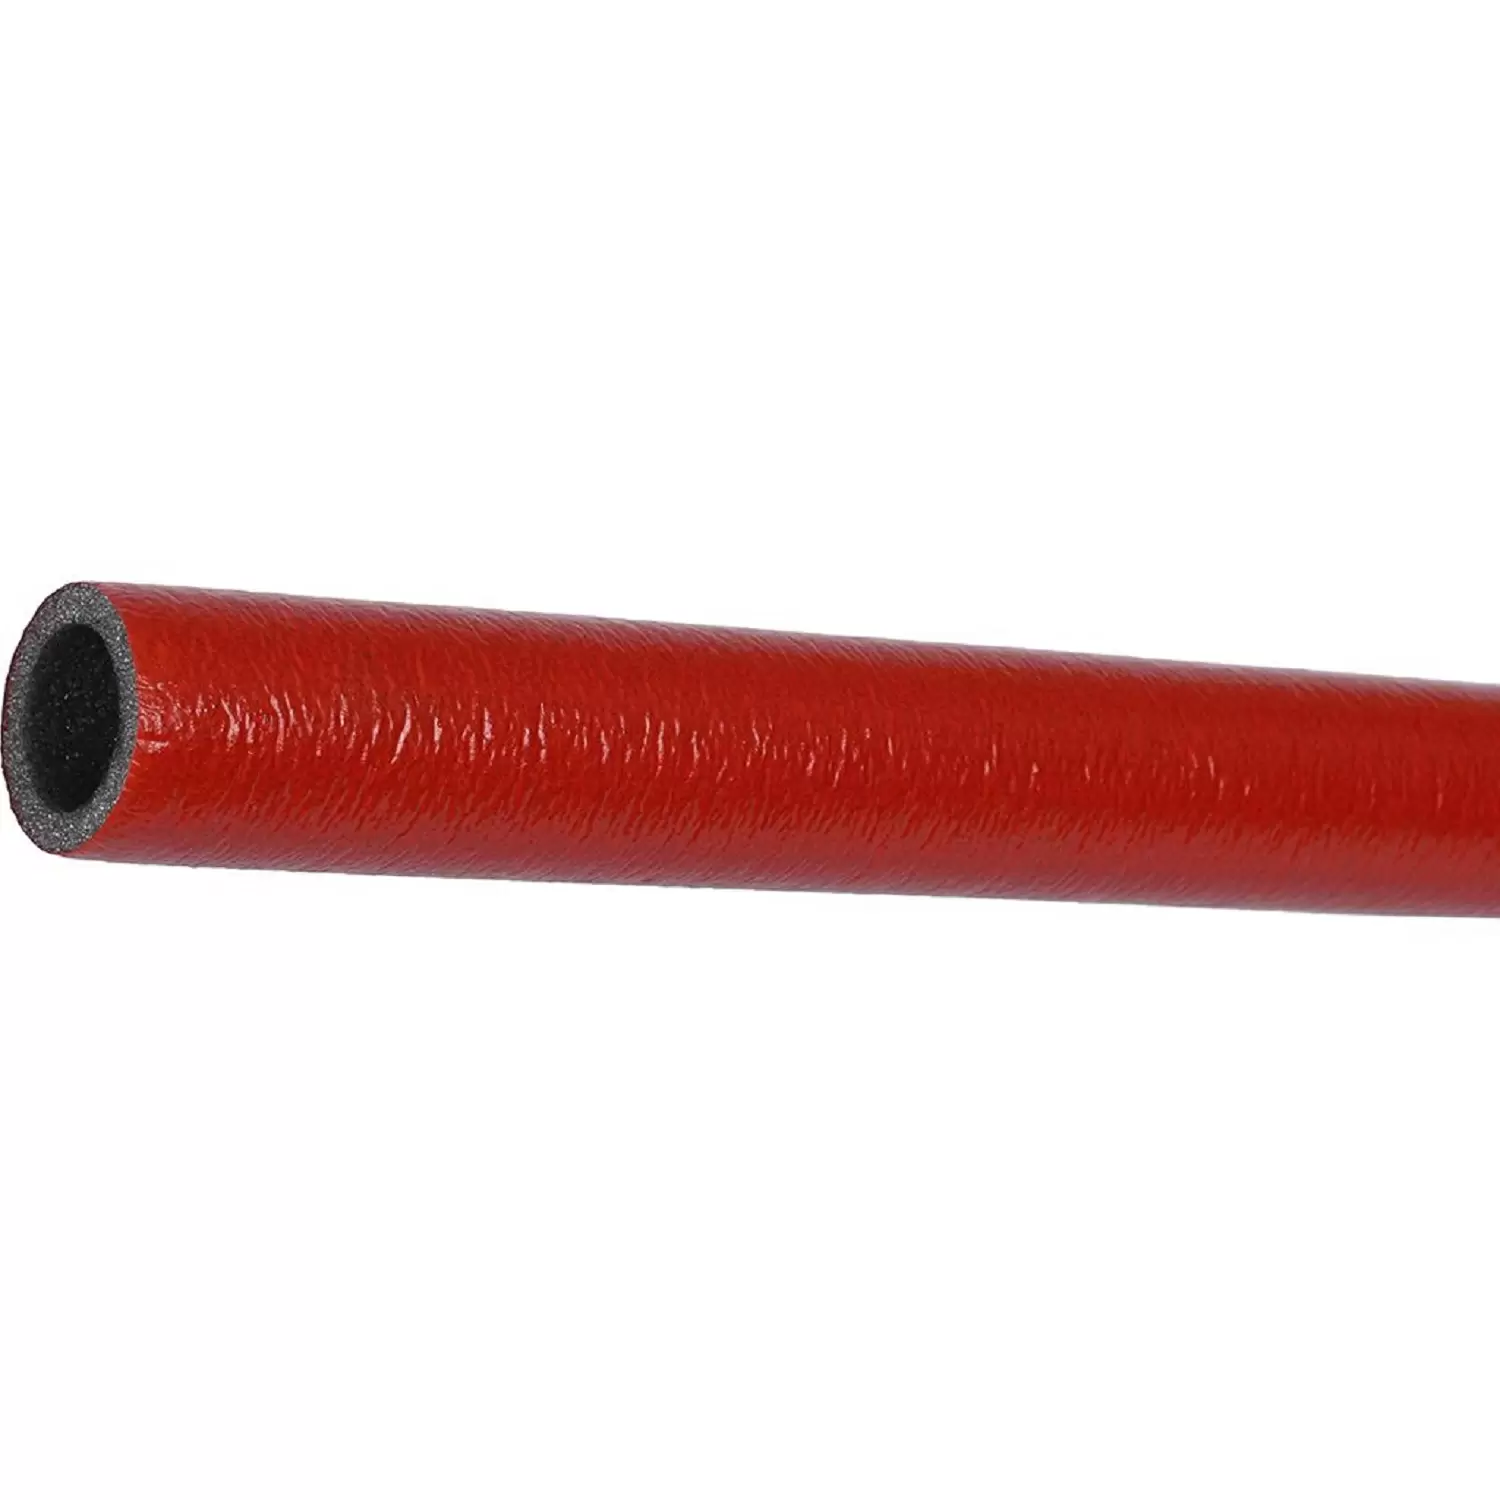 Теплоизоляция Энергофлекс супер протект 18/6 для труб диаметром 16 мм красная, трубка 2 м